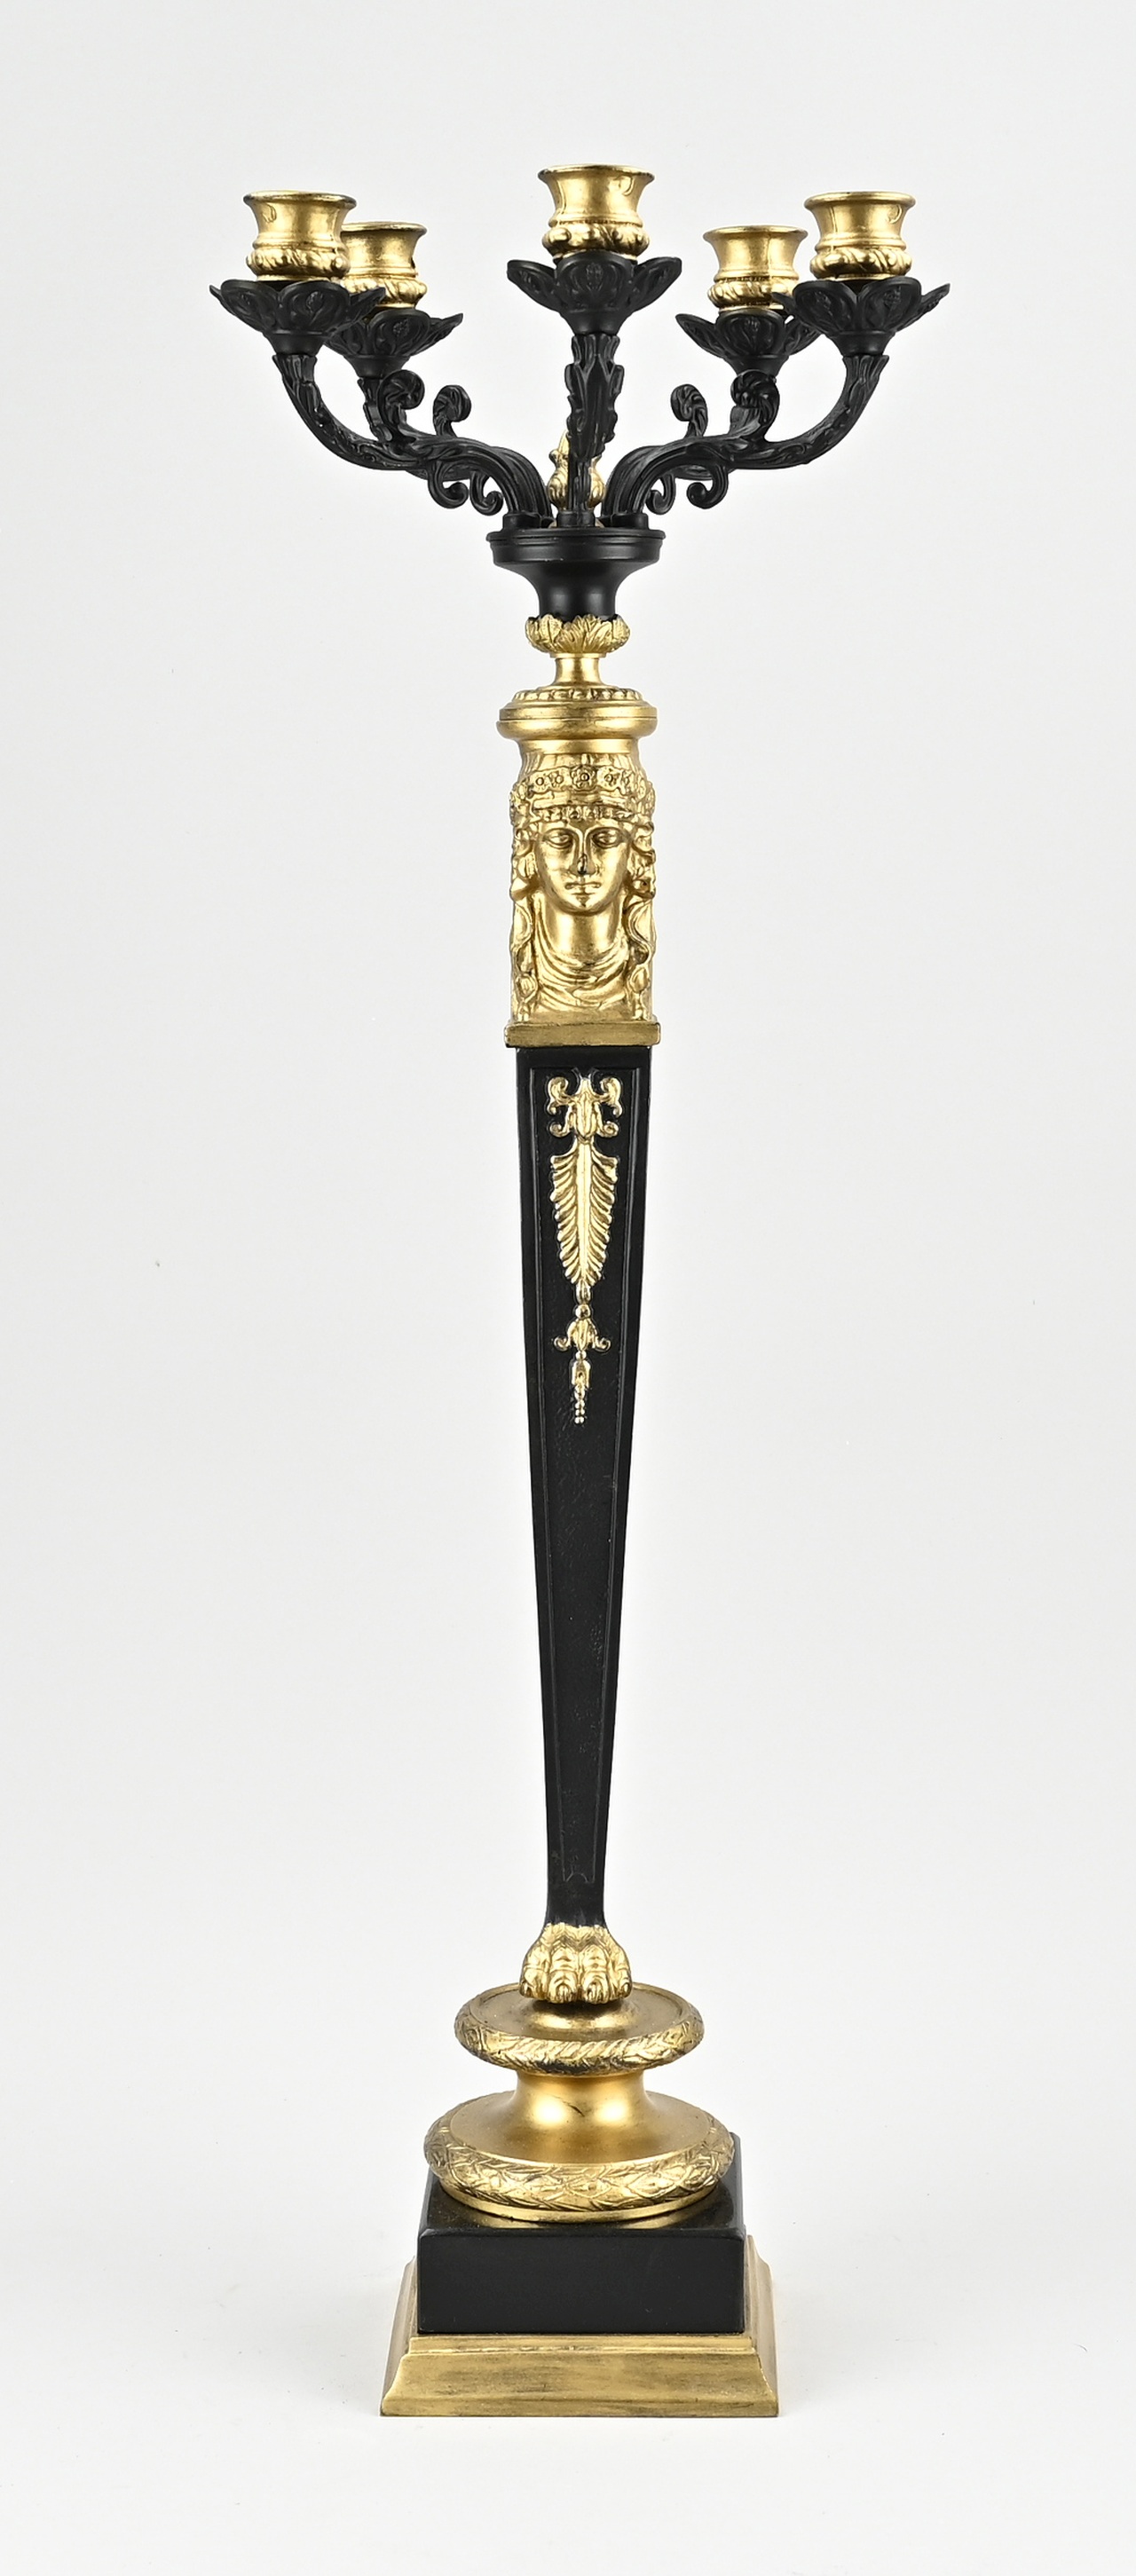 5-Light bronze candlestick, H 70 cm.